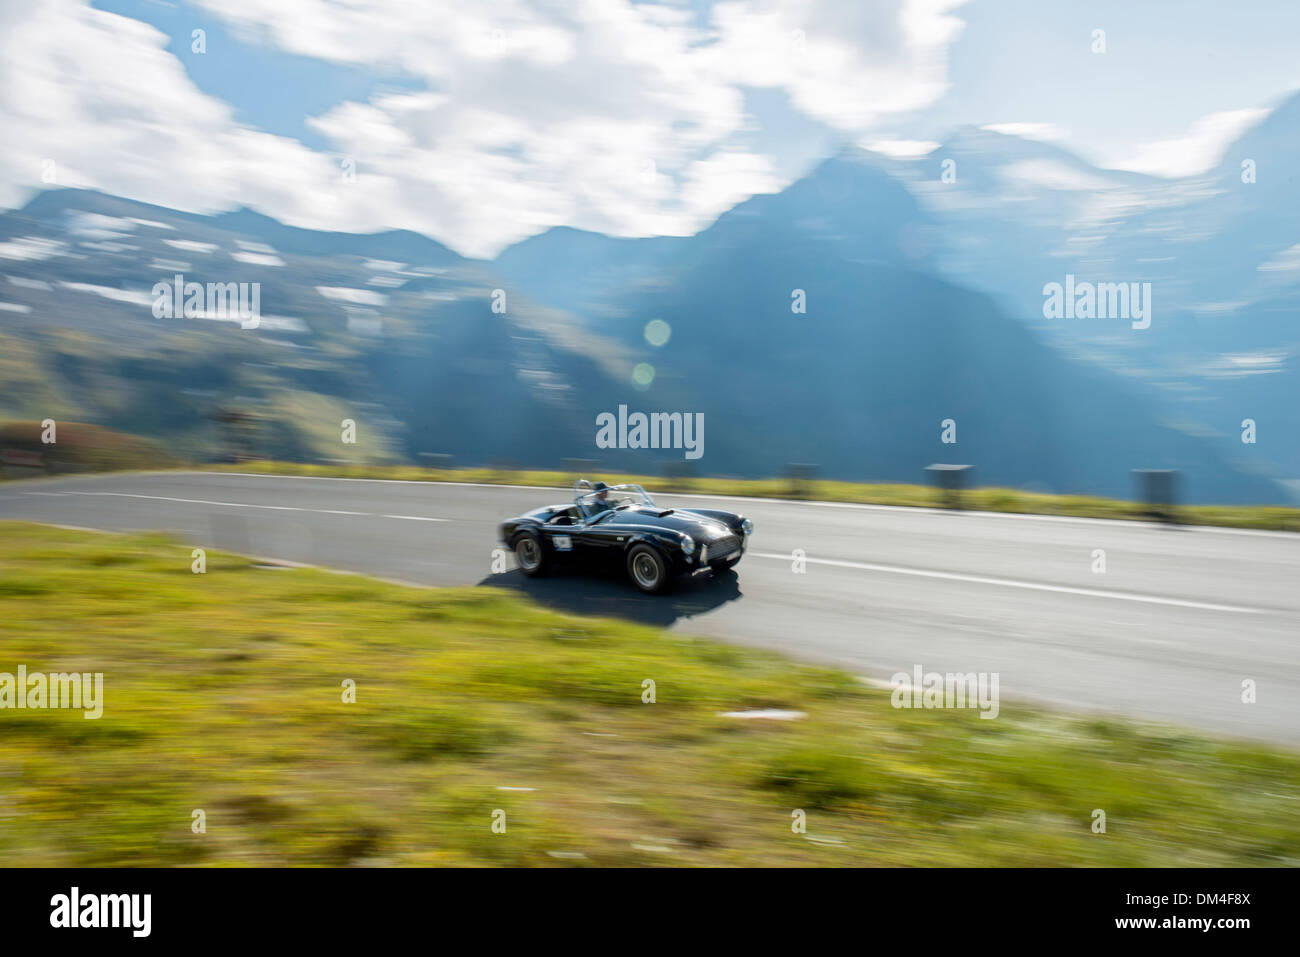 Ac cobra classic car en grossglockner grand prix, carrera de coches clásicos, Austria Foto de stock